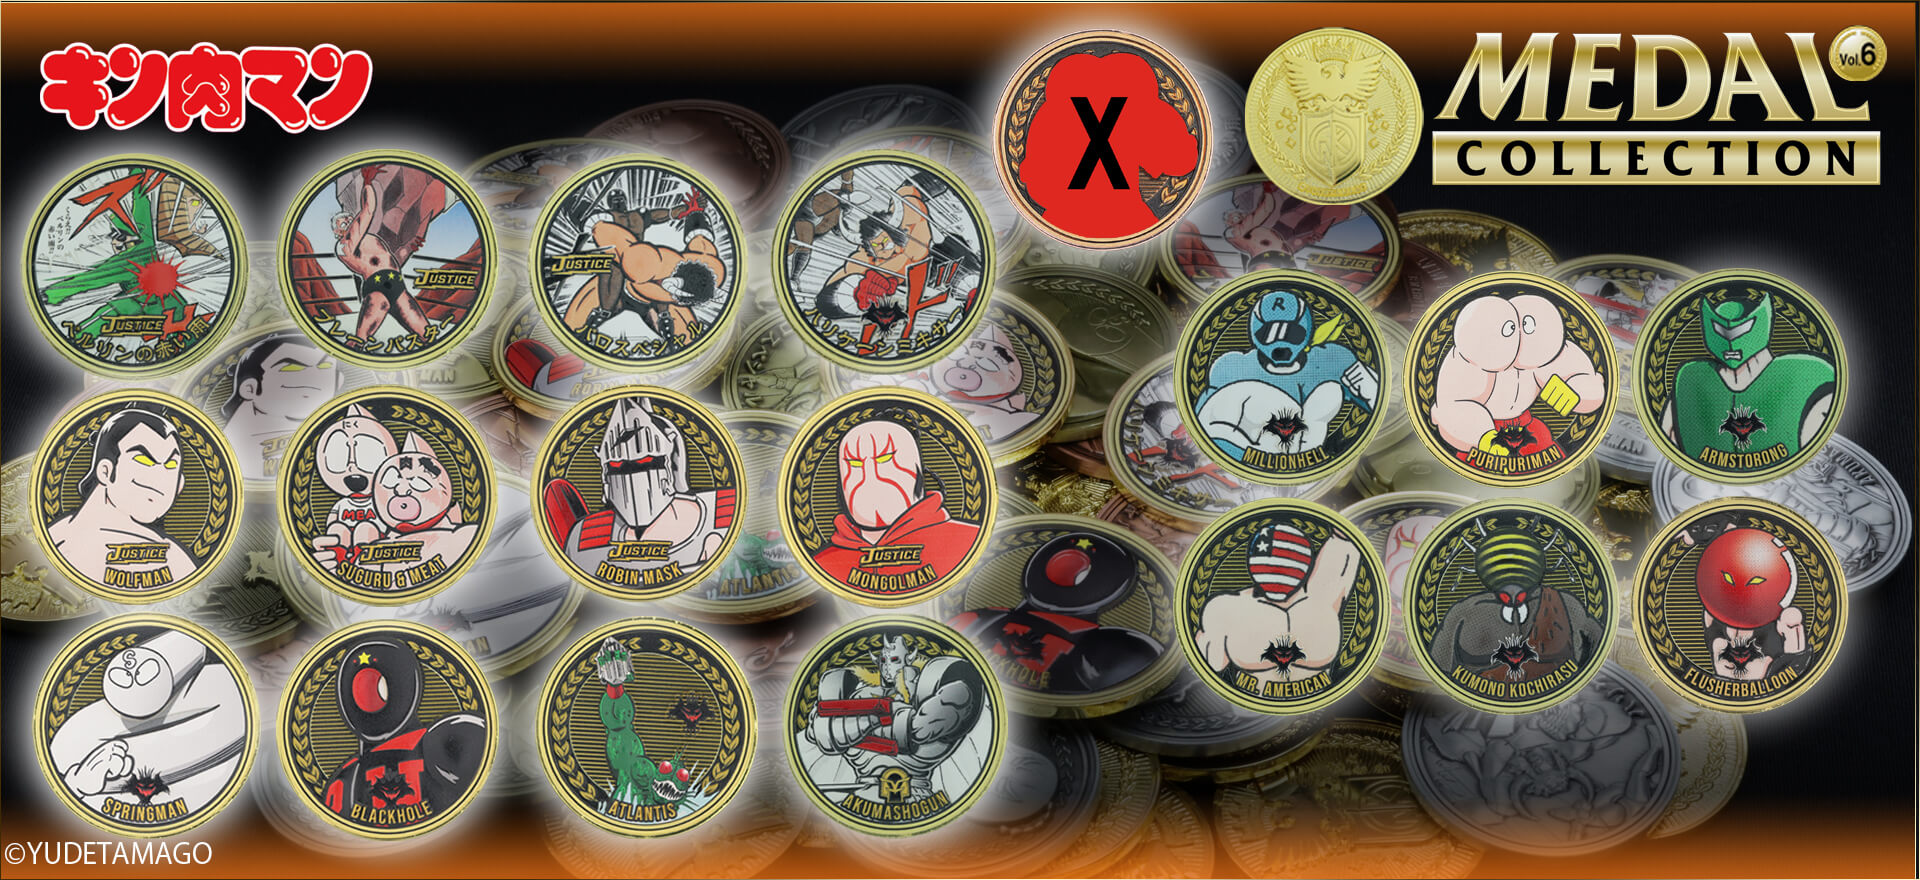 キン肉マンメダルコレクション VOL.6 【BOX】20個入 プラチナメダル 幻の7人の悪魔超人 初回シリアルNO.入 ケース付き【初回購入特典 】KIN(金)肉メダル(非売品)付き